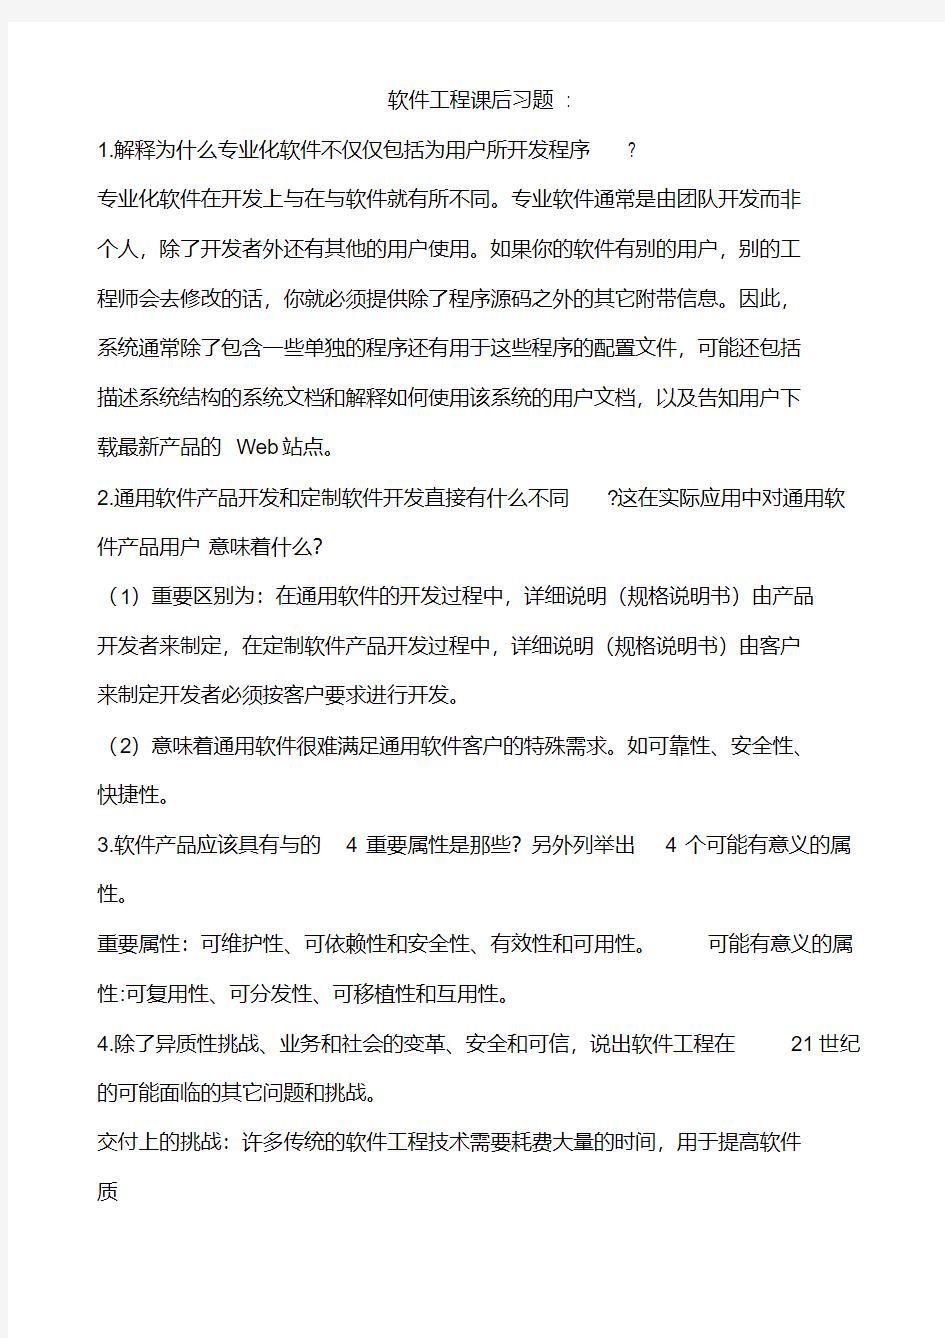 软件工程课后习题答案中文翻译版(第八版)